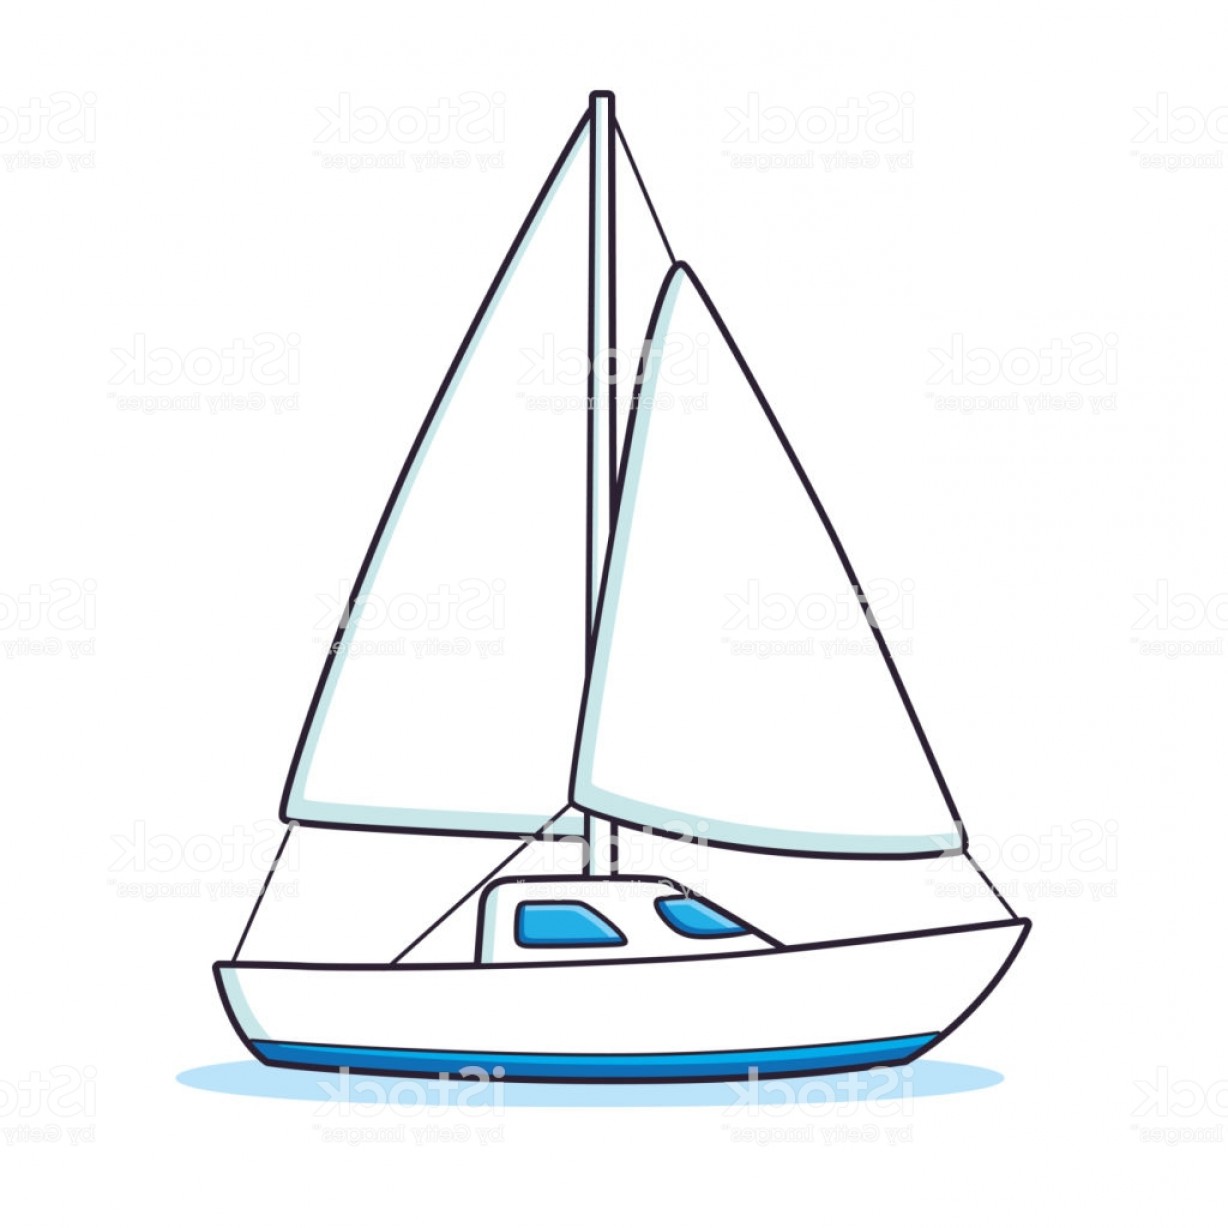 Sailboat sailing yacht.